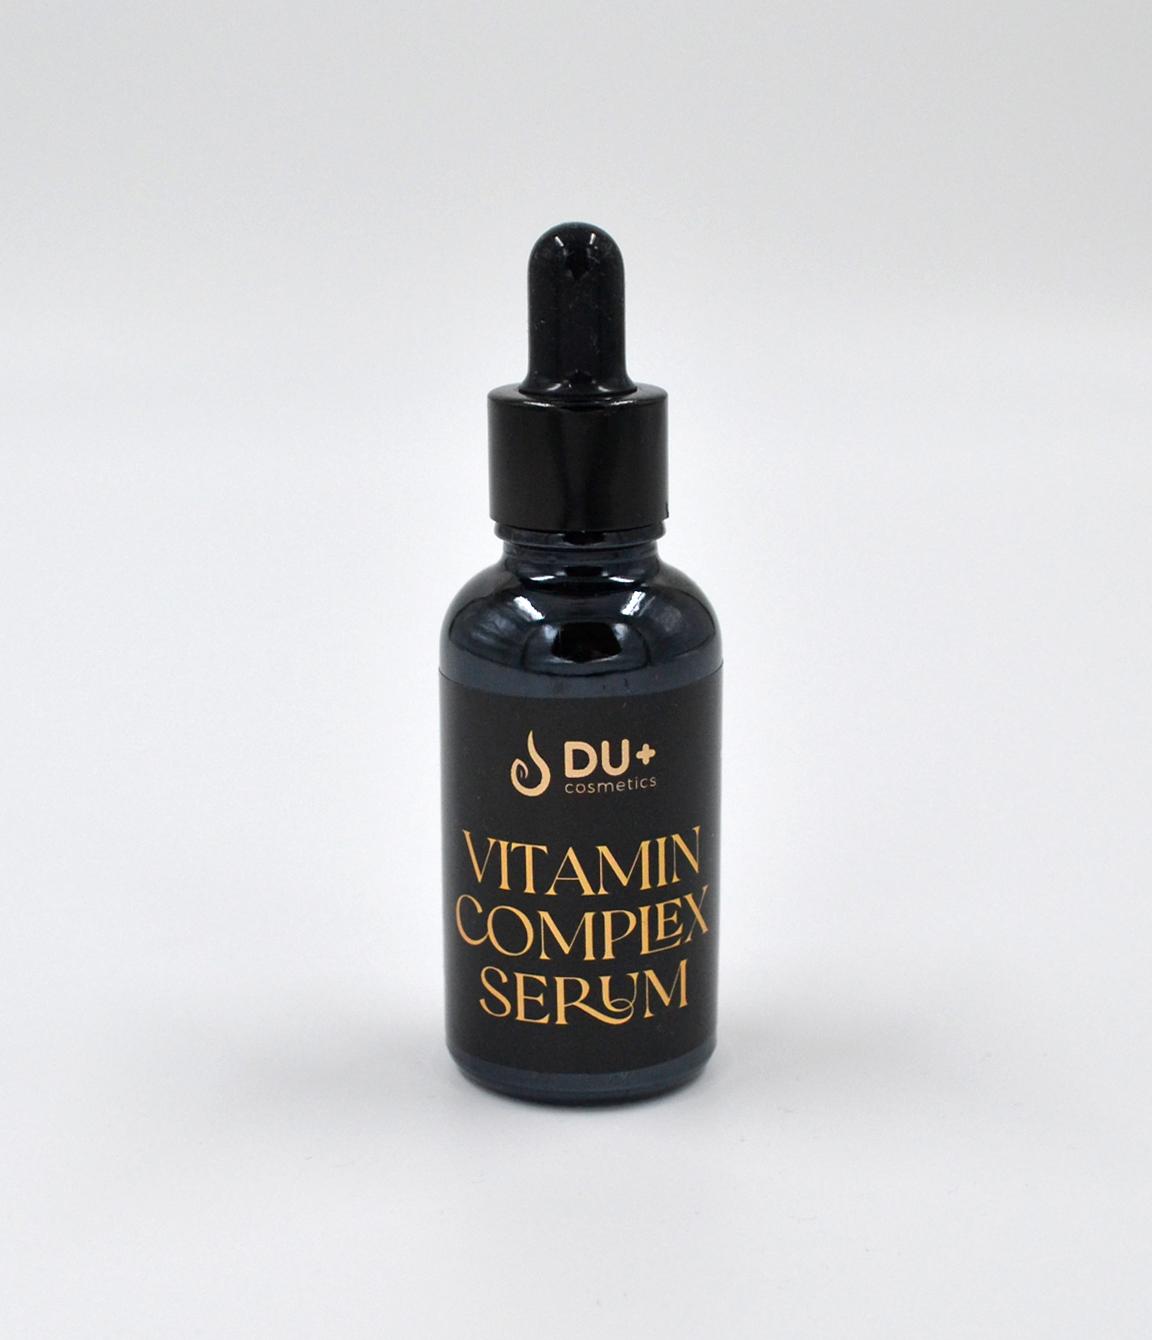 Du+ Cosmetics Vitamini+H2O serum za profesionalnu upotrebu, 30ml